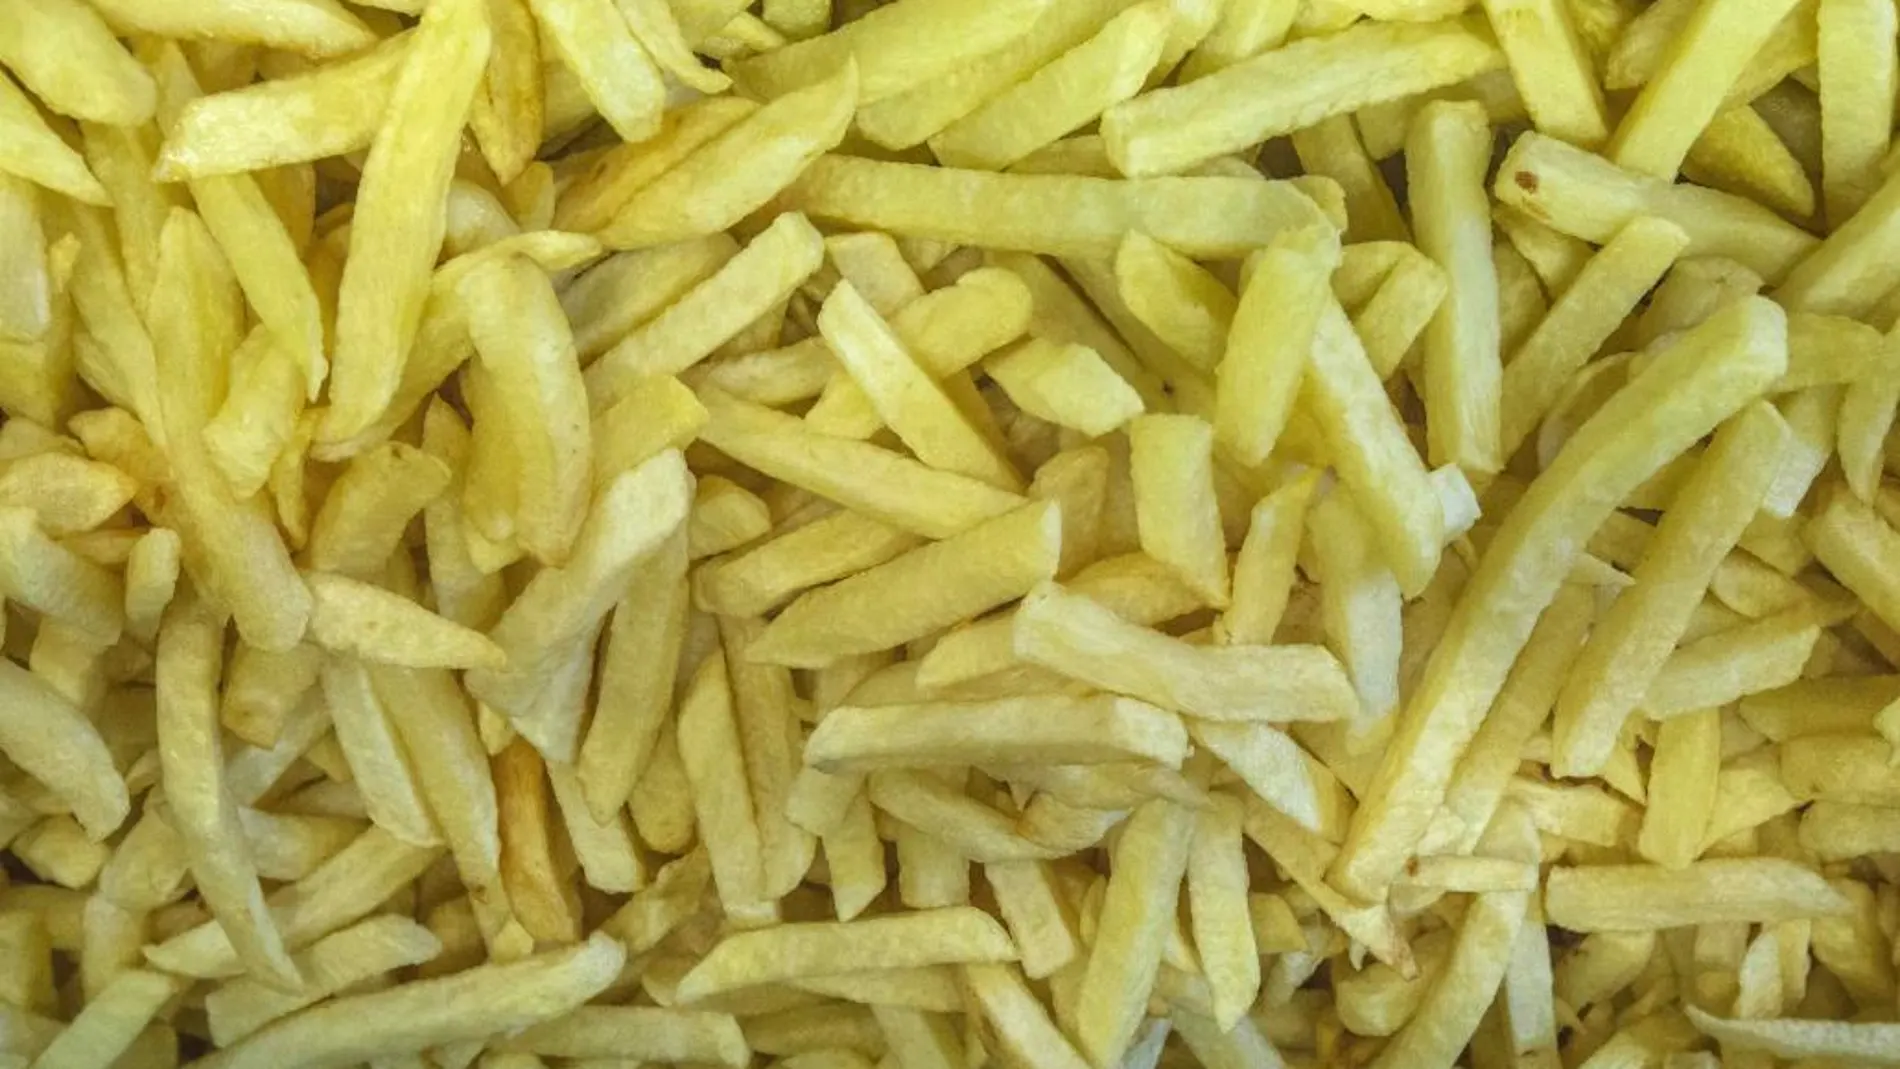 La ingesta elevada de patatas y patatas fritas puede estar asociada con un mayor riesgo de presión arterial alta, según el estudio